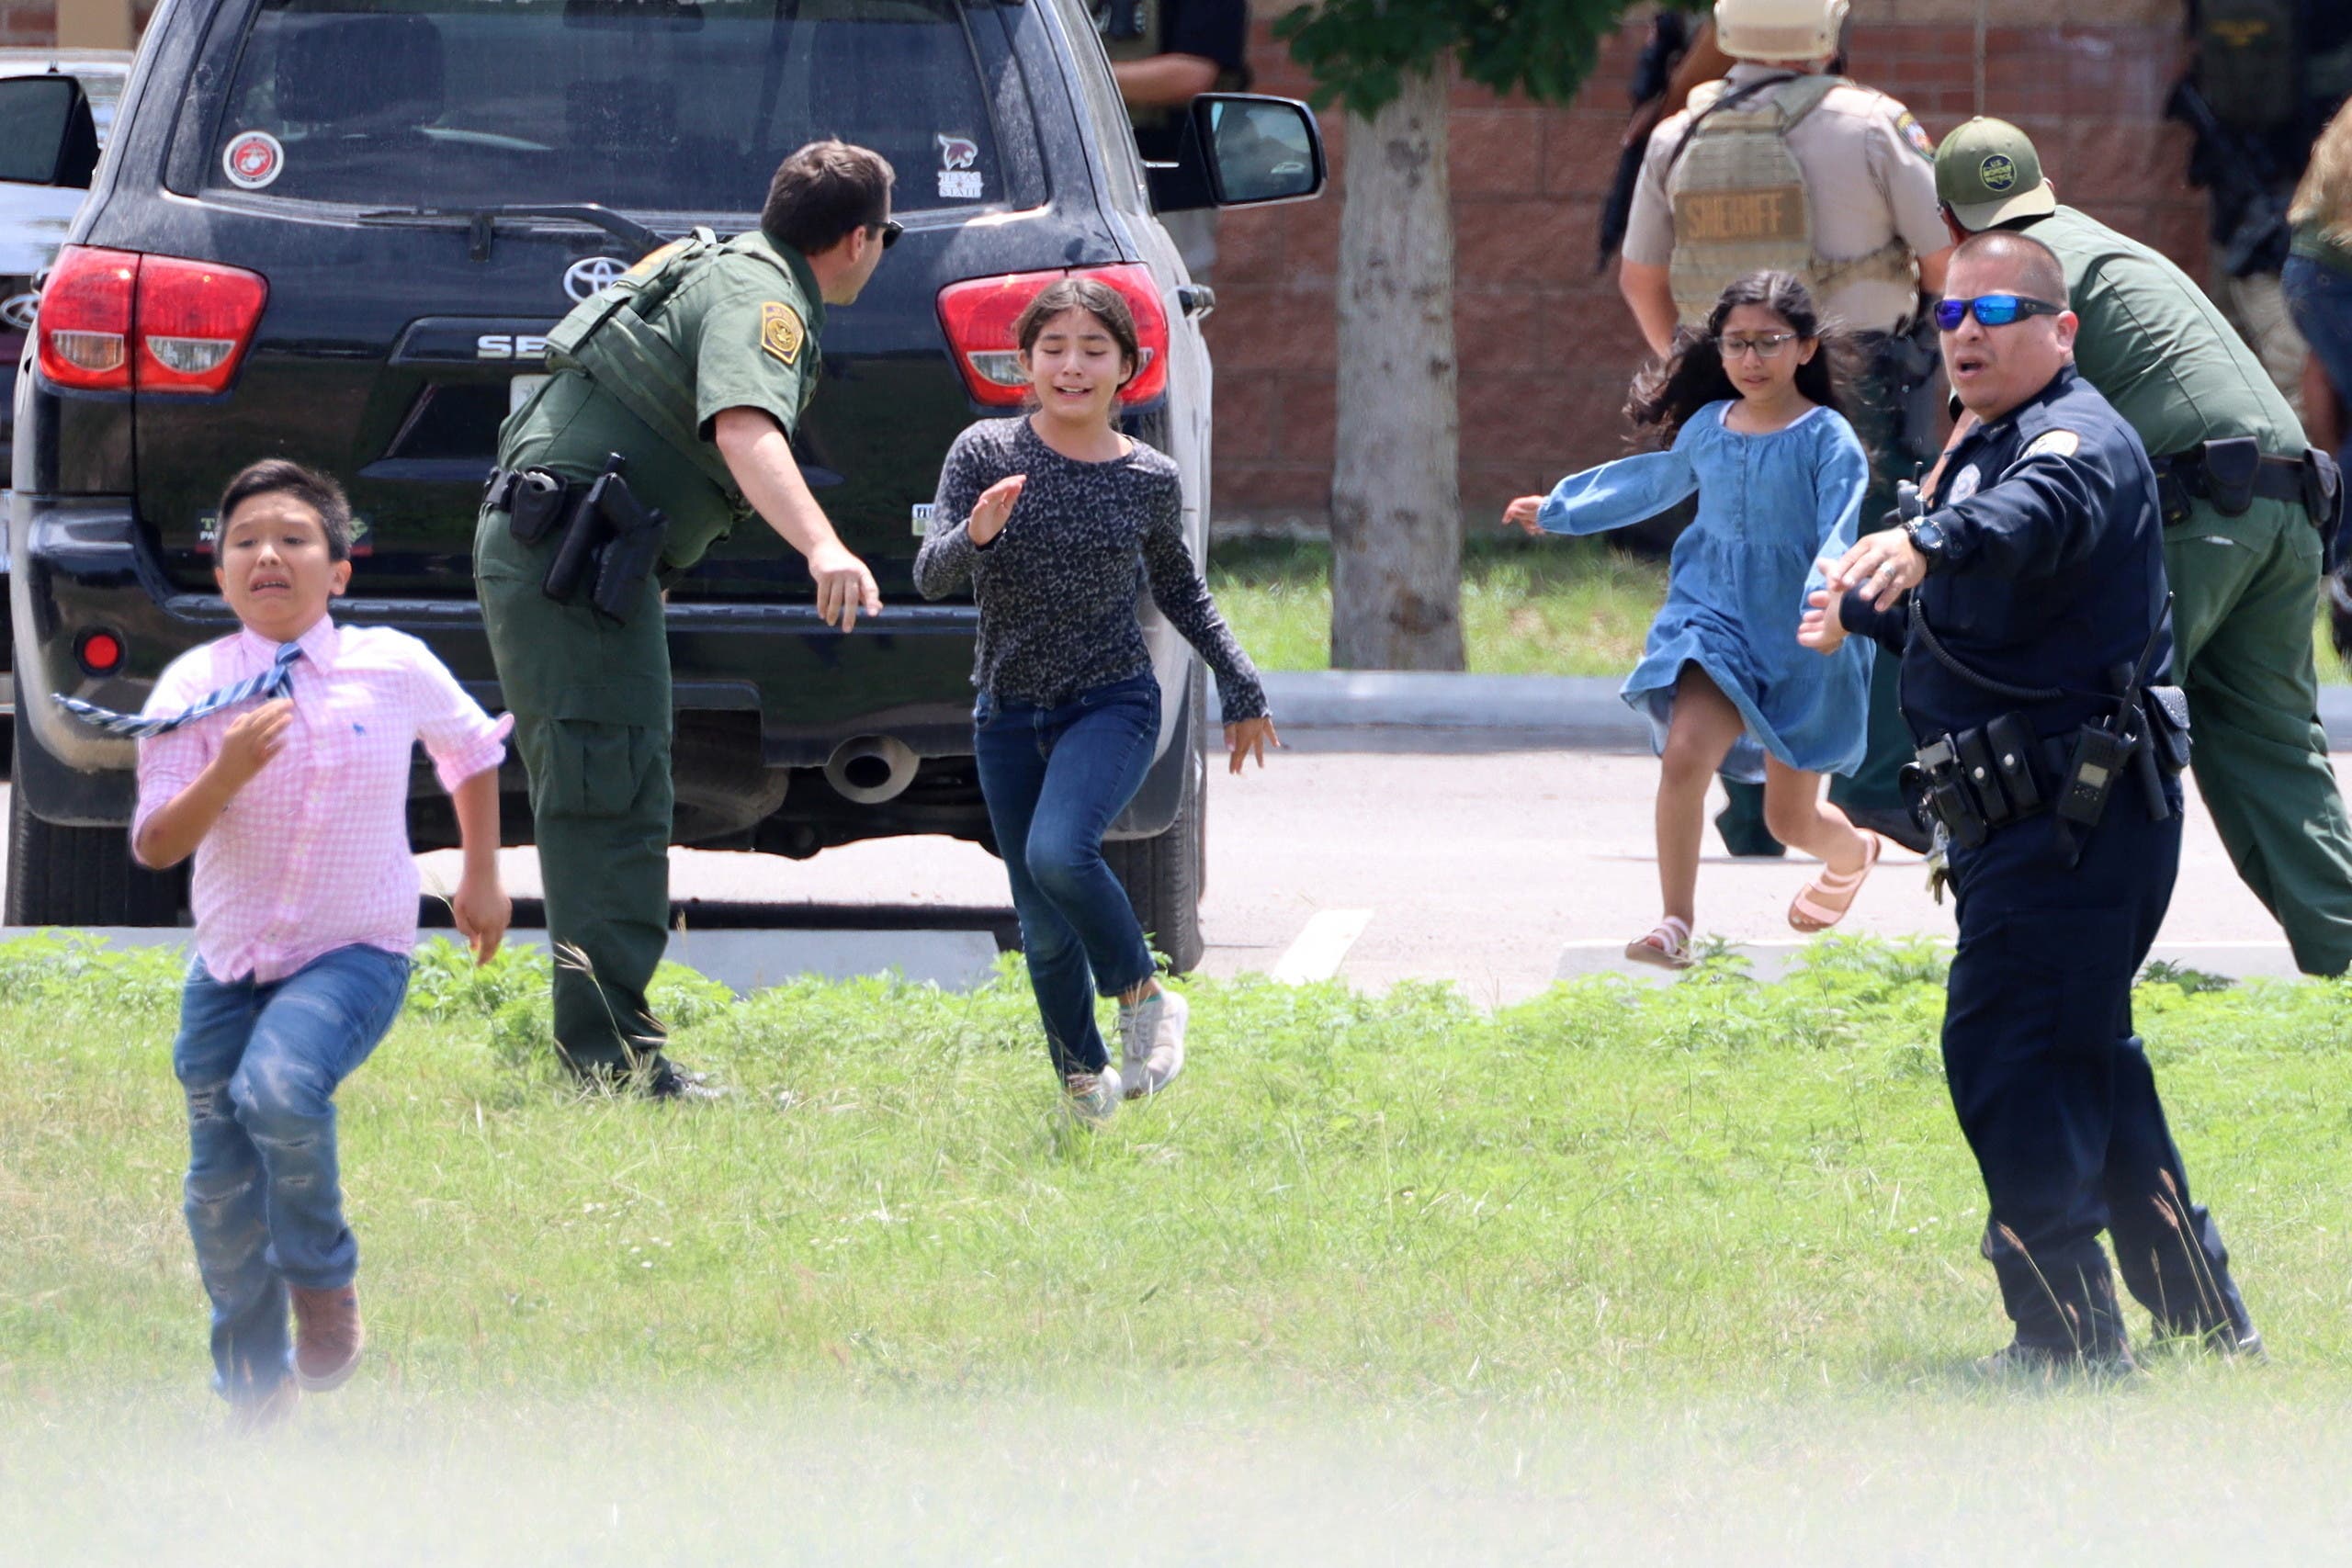 أطفال يهربون من مدرسة في تكساس في مايو الماضي إثر المجزرة التي وقعت فيها